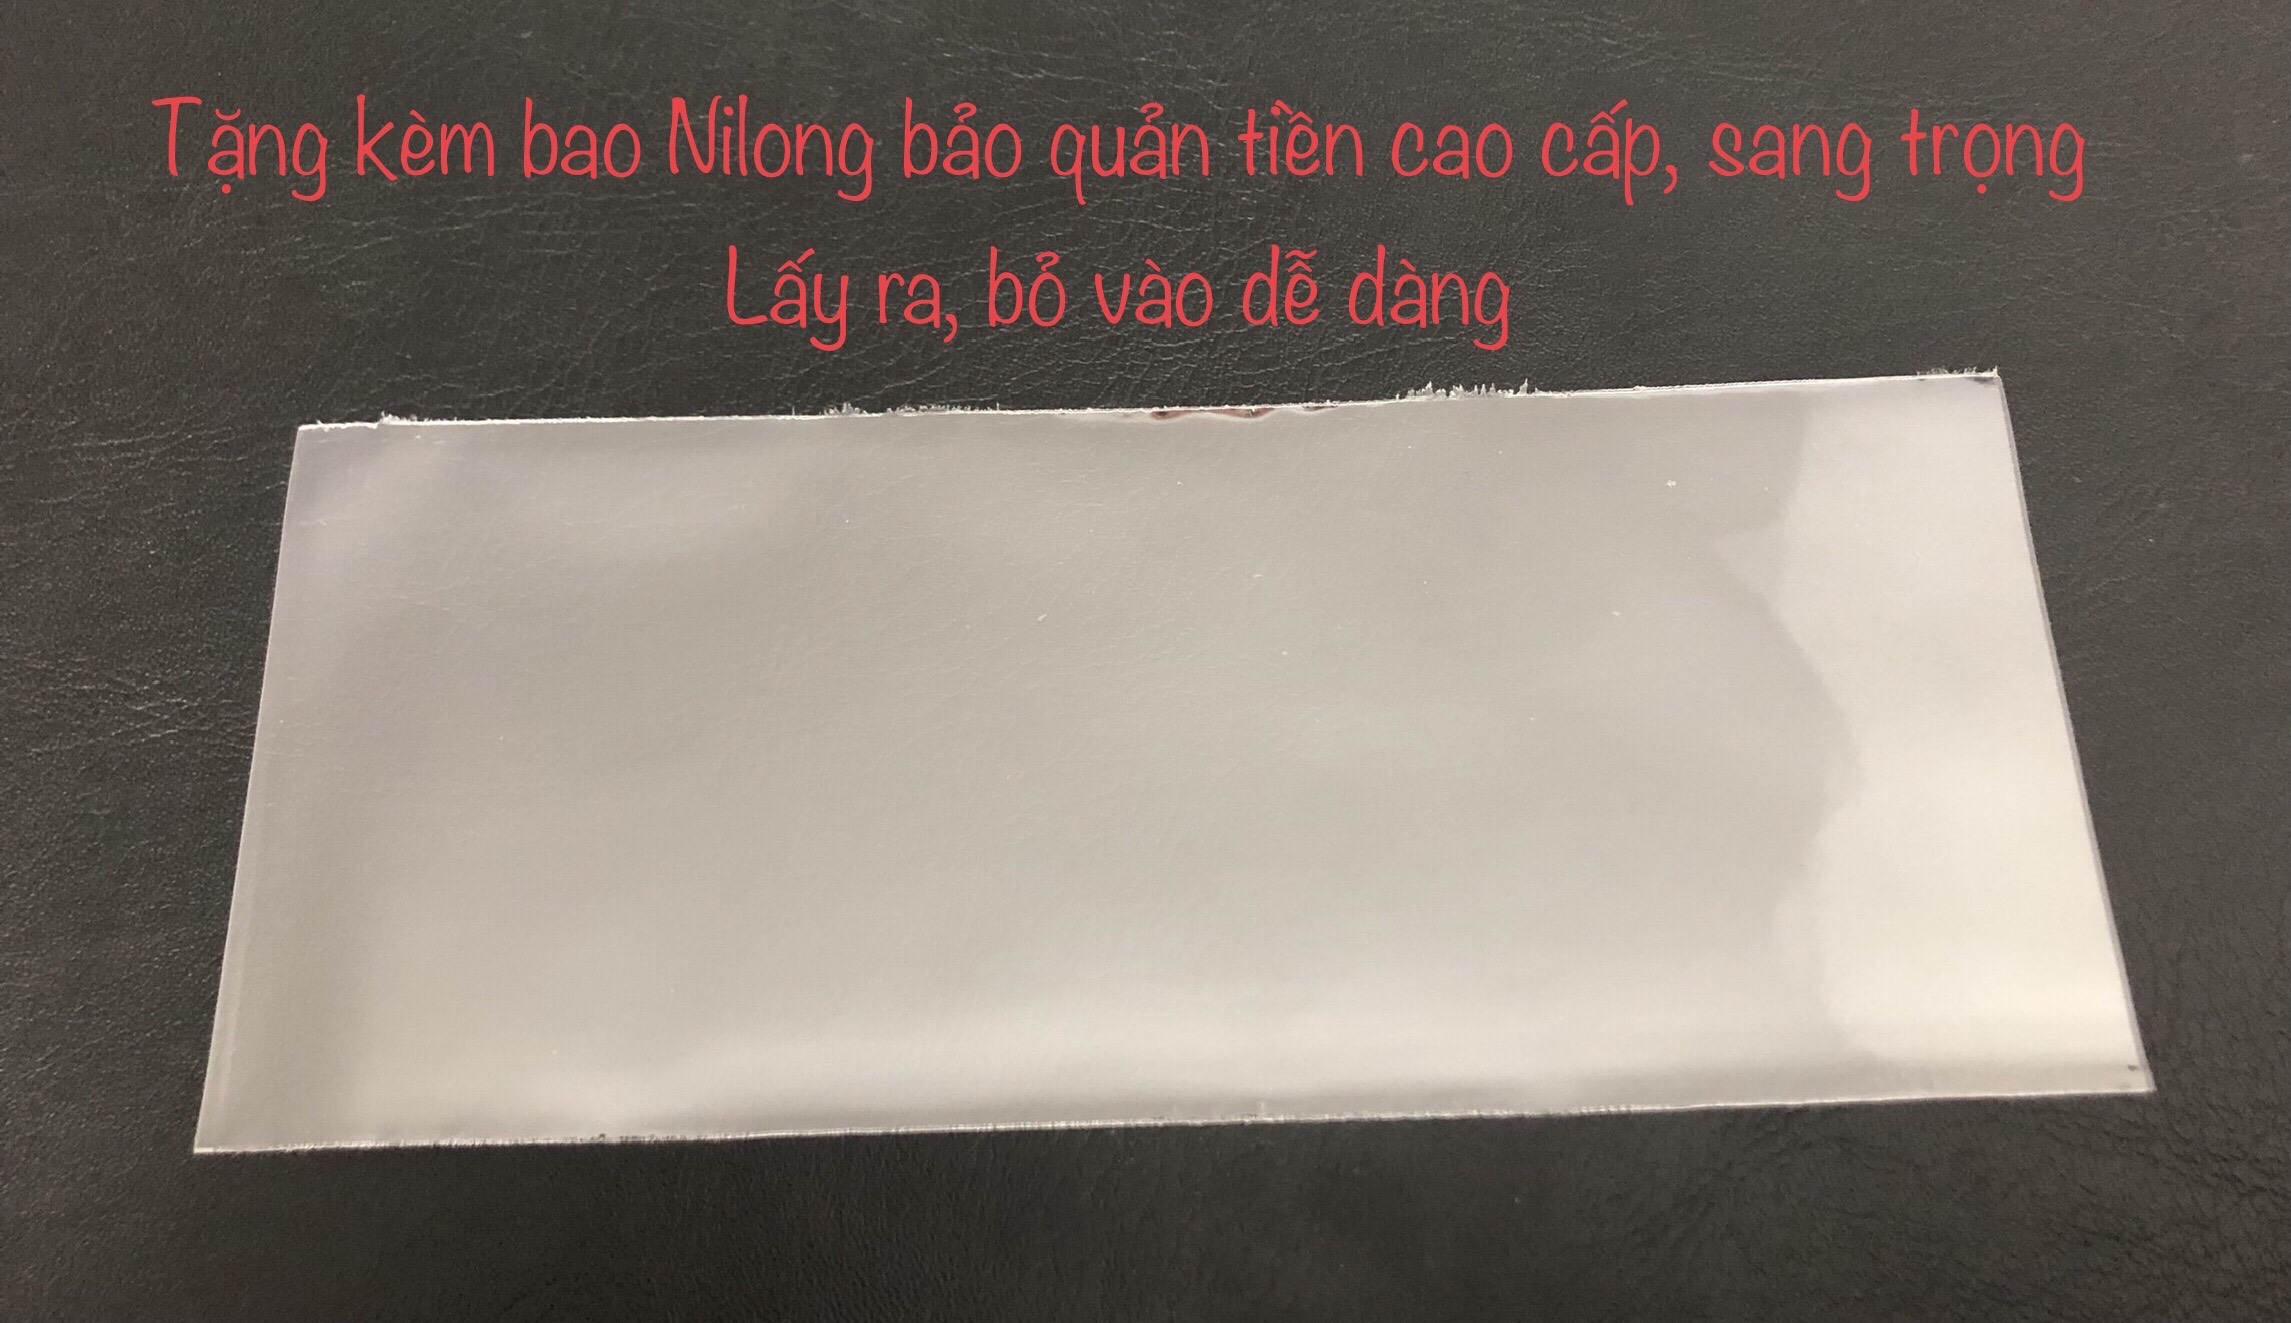 Combo 3 tờ tiền Việt Nam mệnh giá 5 đồng khác nhau, tặng kèm bao nilong bảo quản